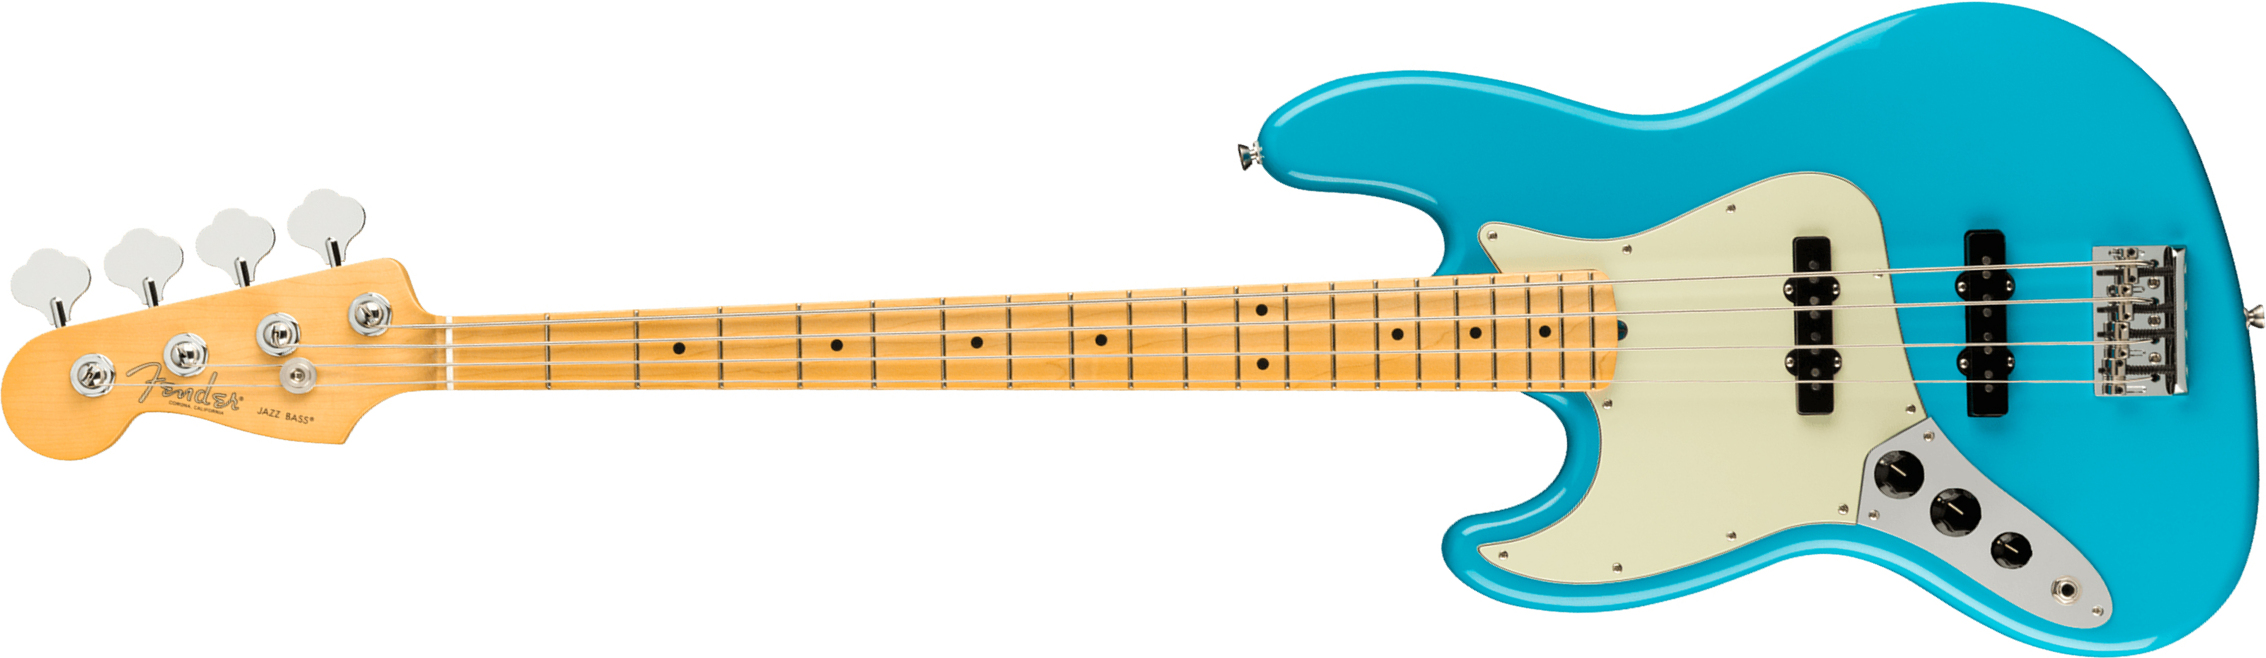 Fender Jazz Bass American Professional Ii Lh Gaucher Usa Mn - Miami Blue - Solid body elektrische bas - Main picture